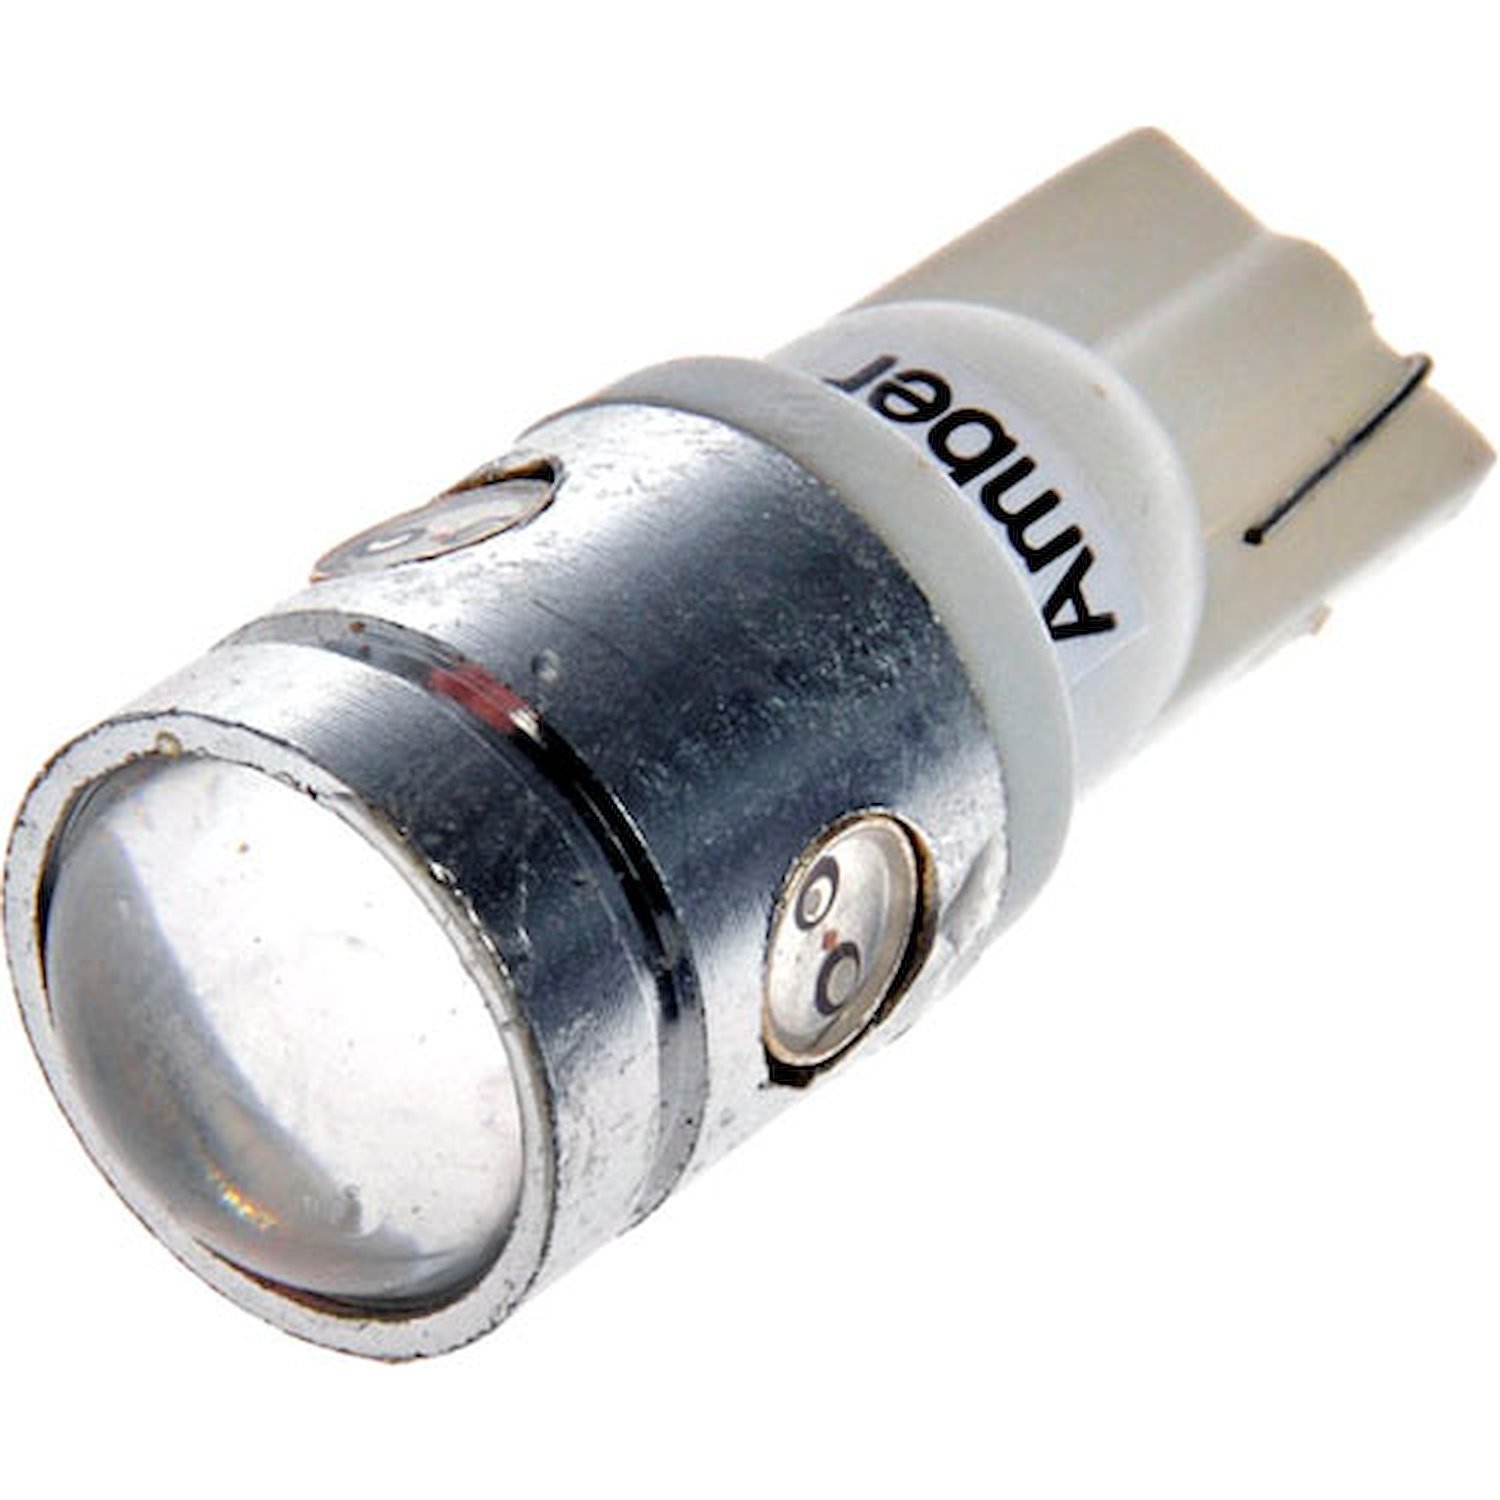 194A-HP Side Marker LED Light Bulb for Multiple